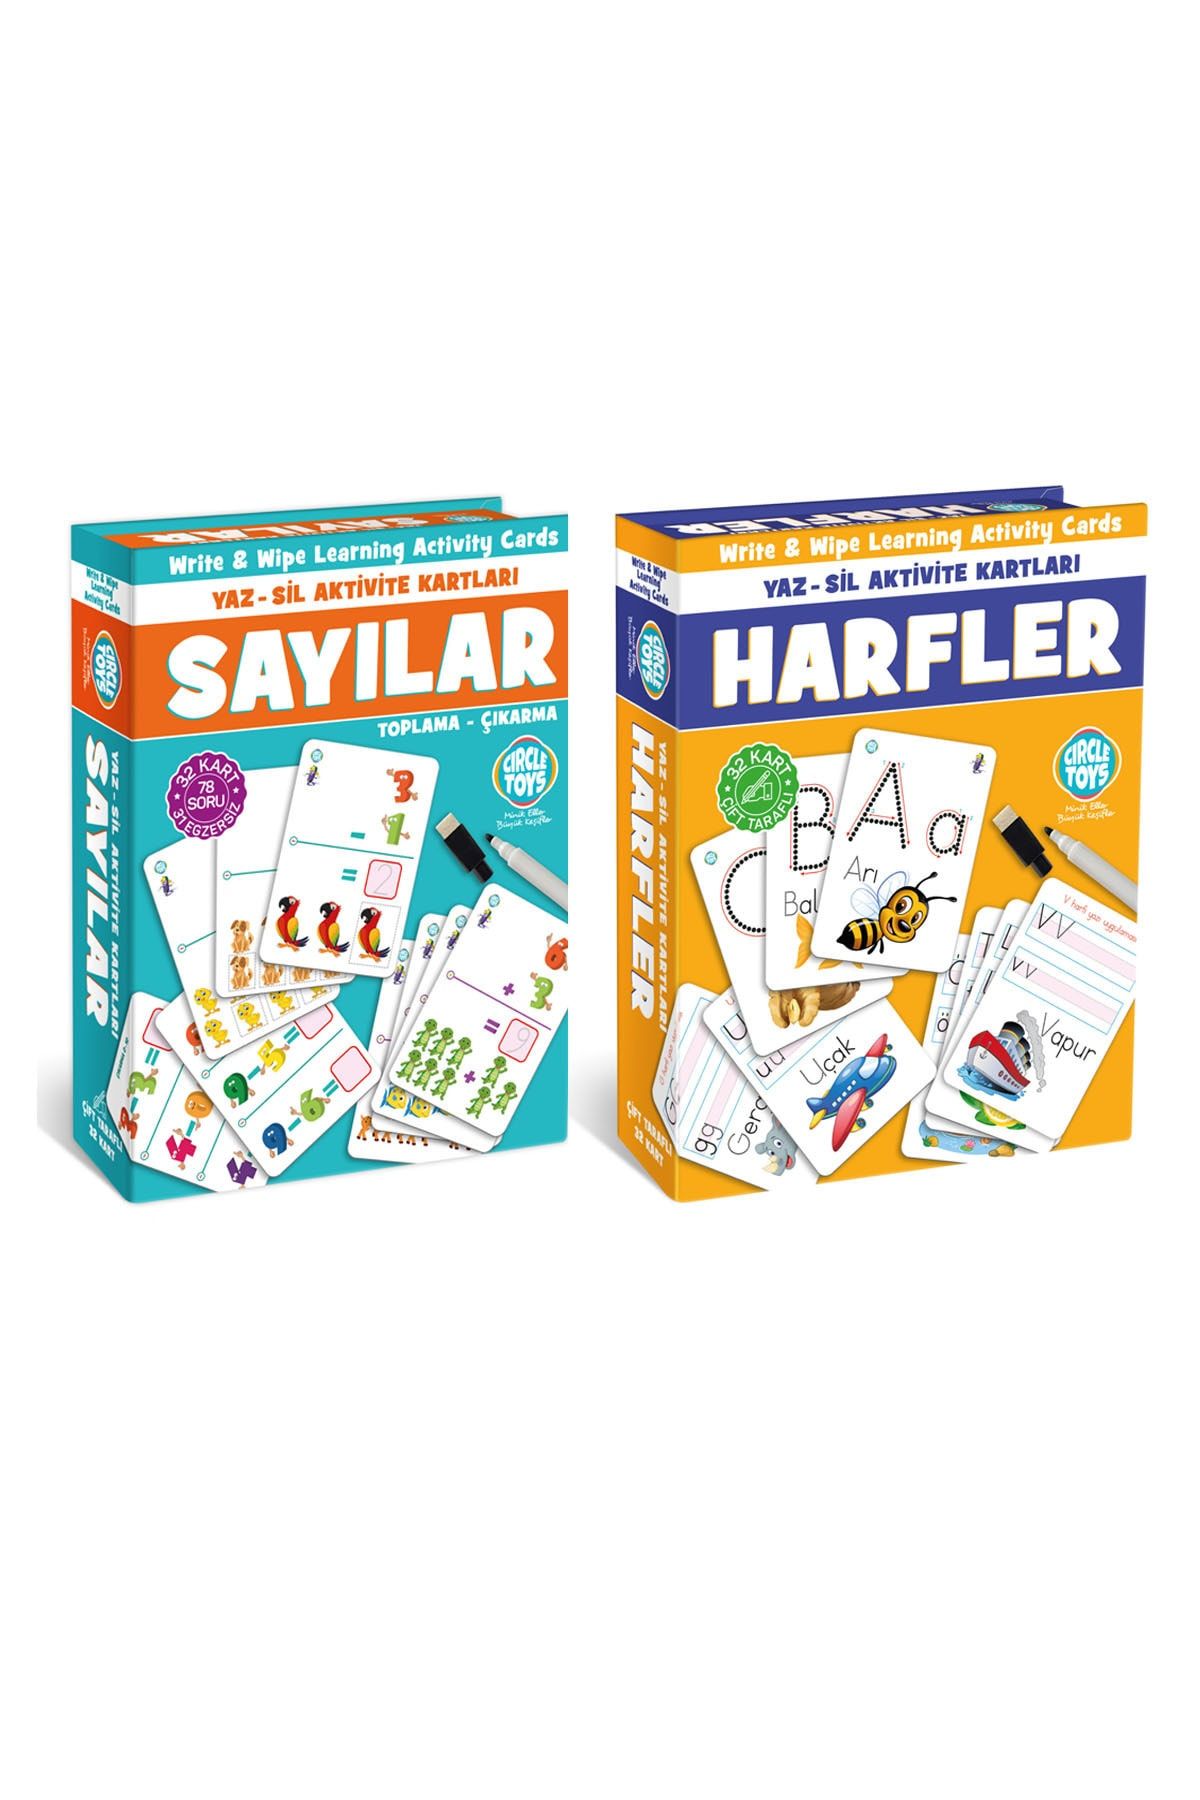 Circle Toys Harfler & Sayılar Yaz-sil Aktivite Kartları